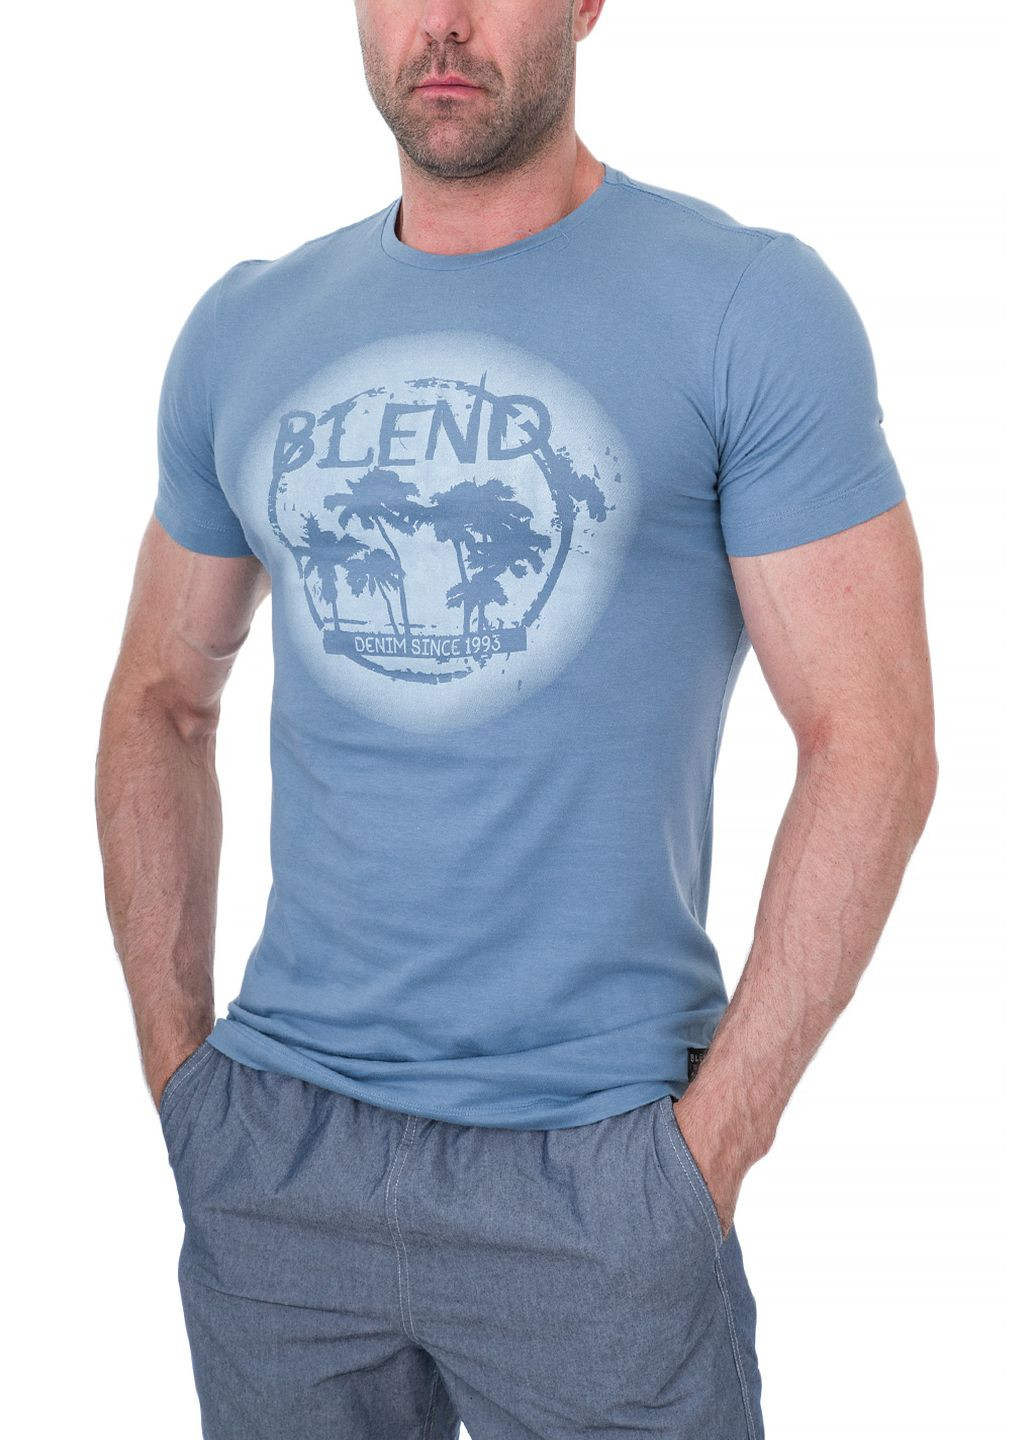 Синяя футболка Blend